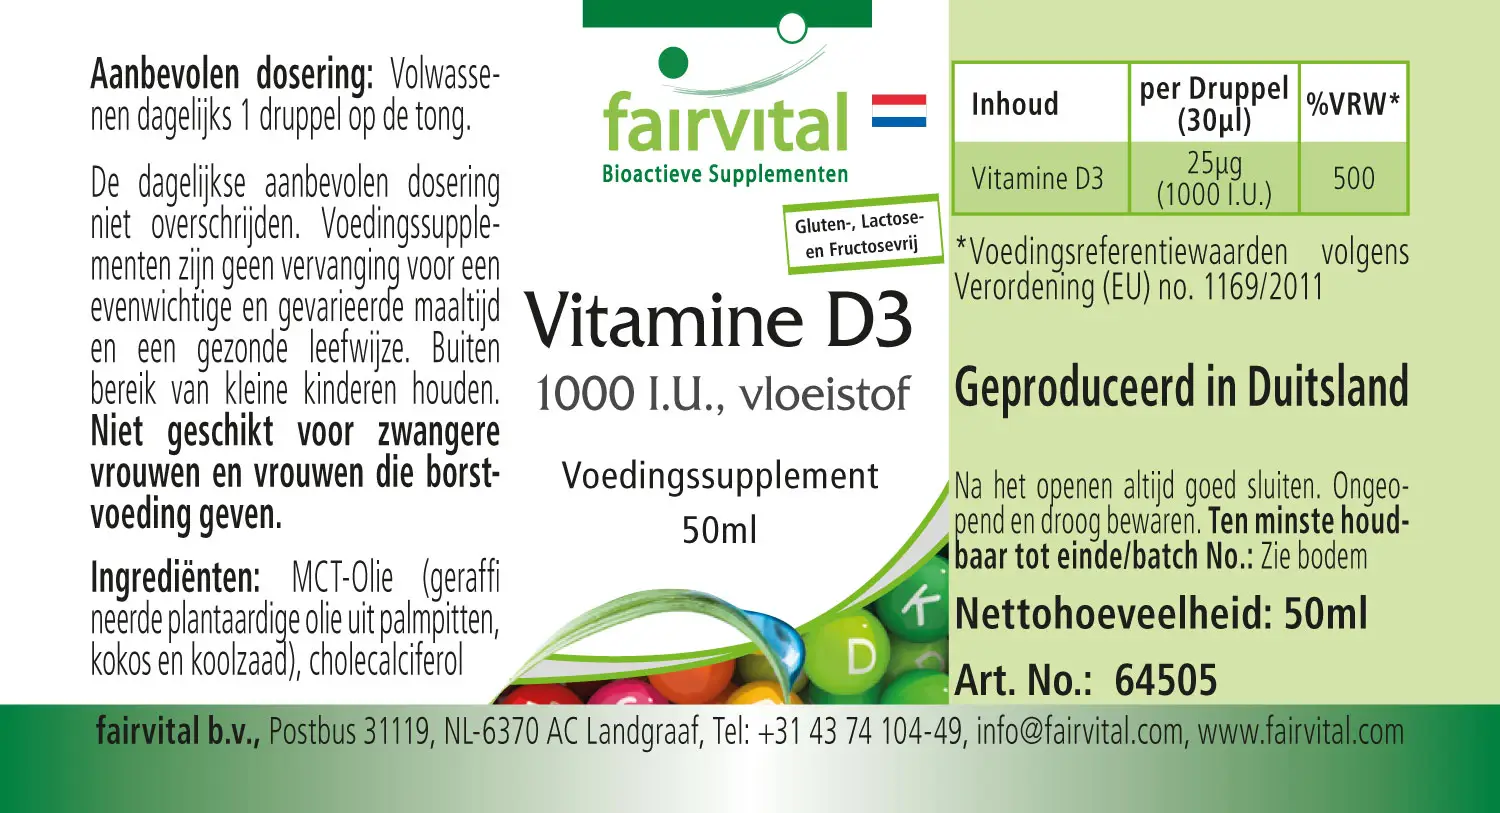 Vitamin D3 flüssig 1000 I.E. pro Tropfen